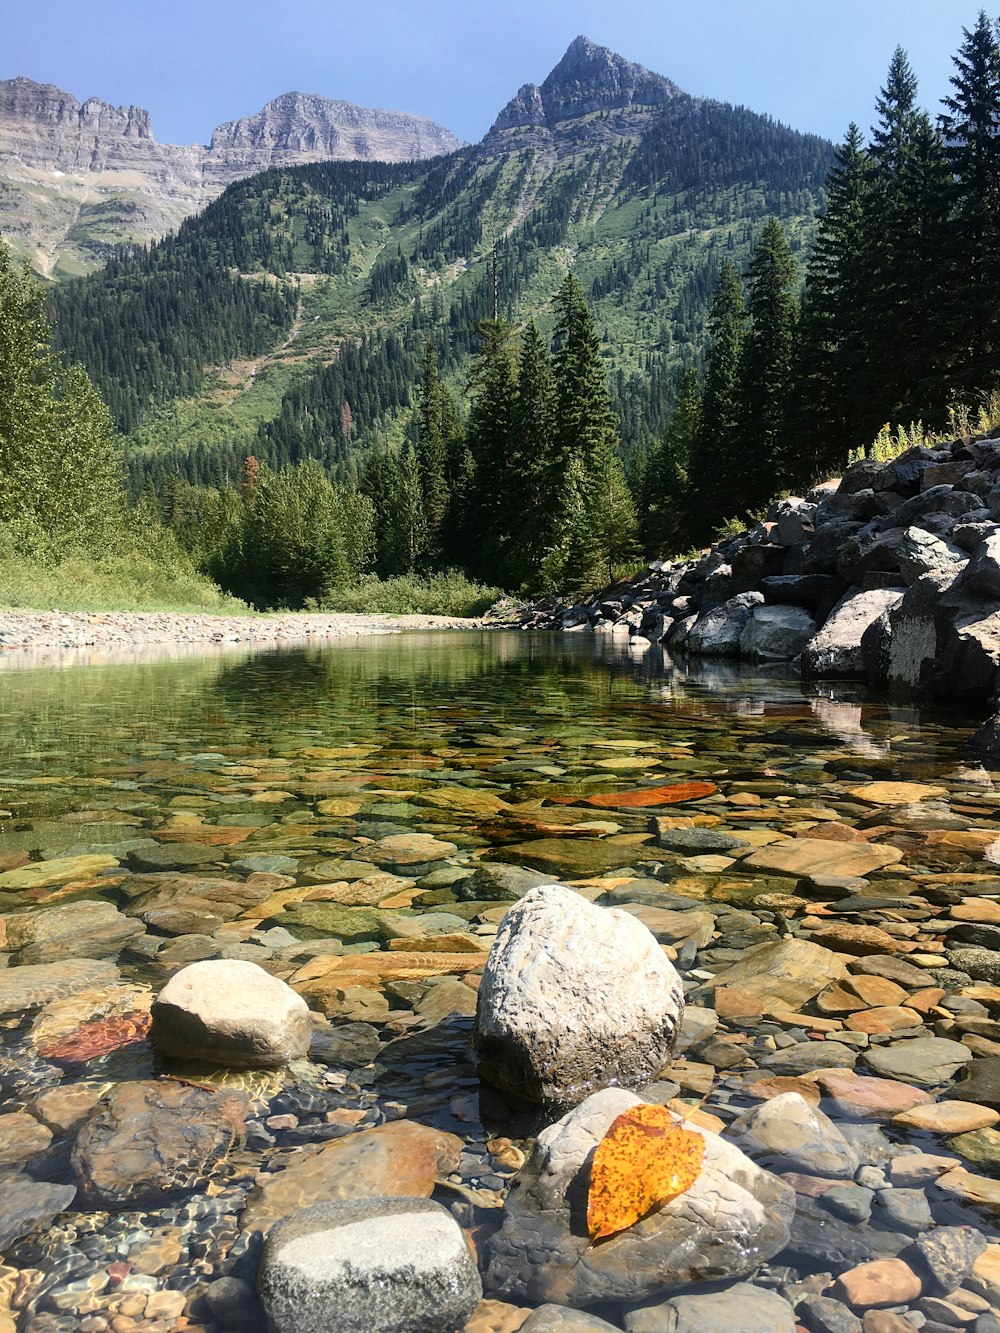 rochas cinzentas no rio perto de árvores verdes e montanha durante o dia